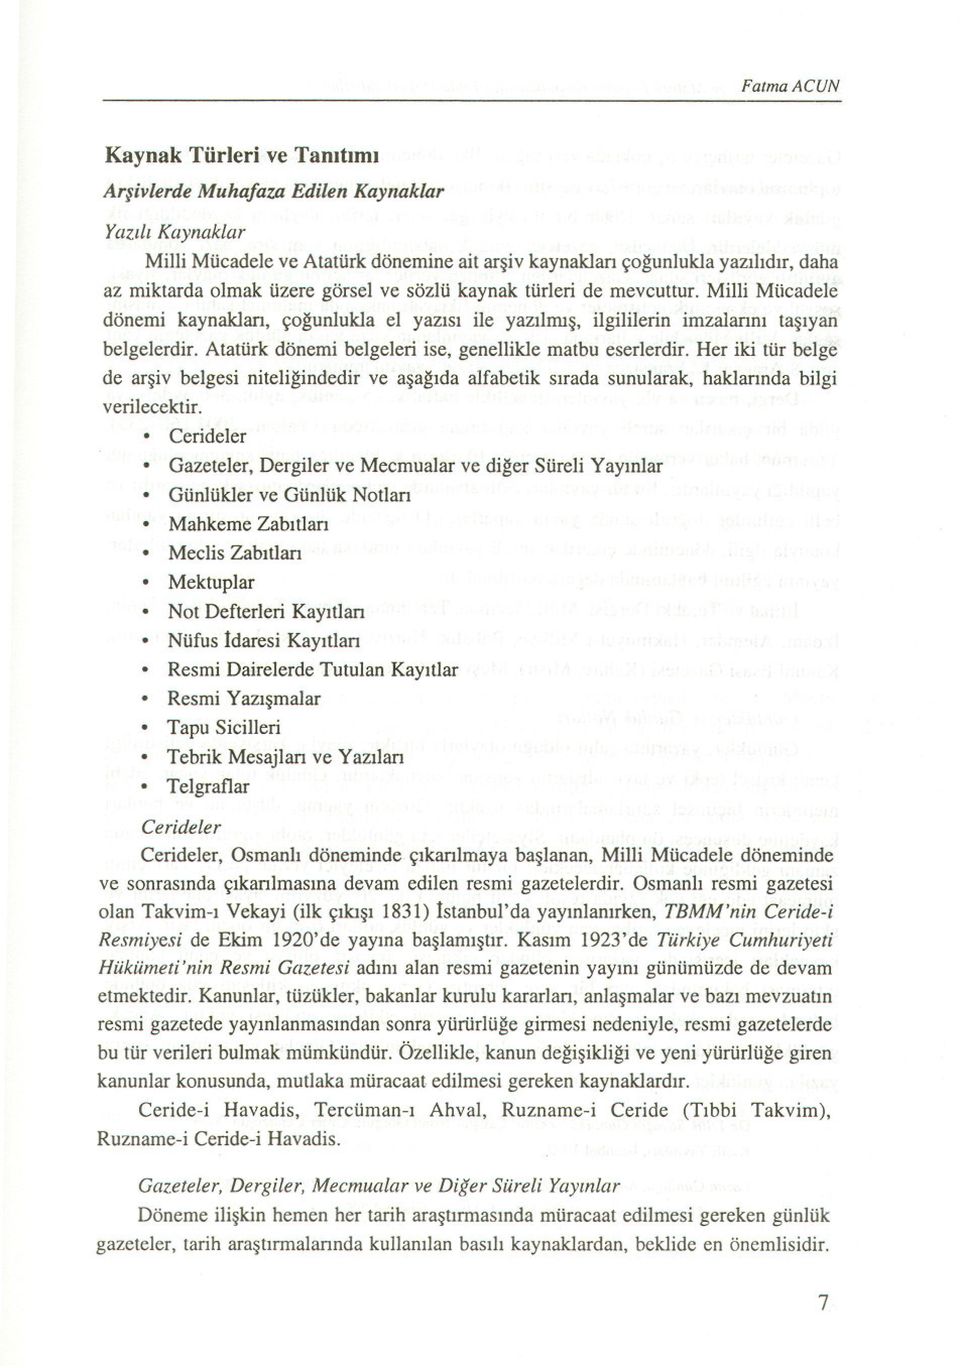 Atatürk dönemi belgeleri ise, genellikle matbu eserlerdir. Her iki tür belge de arsiv belgesi niteligindedir ve asagida alfabetik sirada sunularak, haklannda bilgi verilecektir.